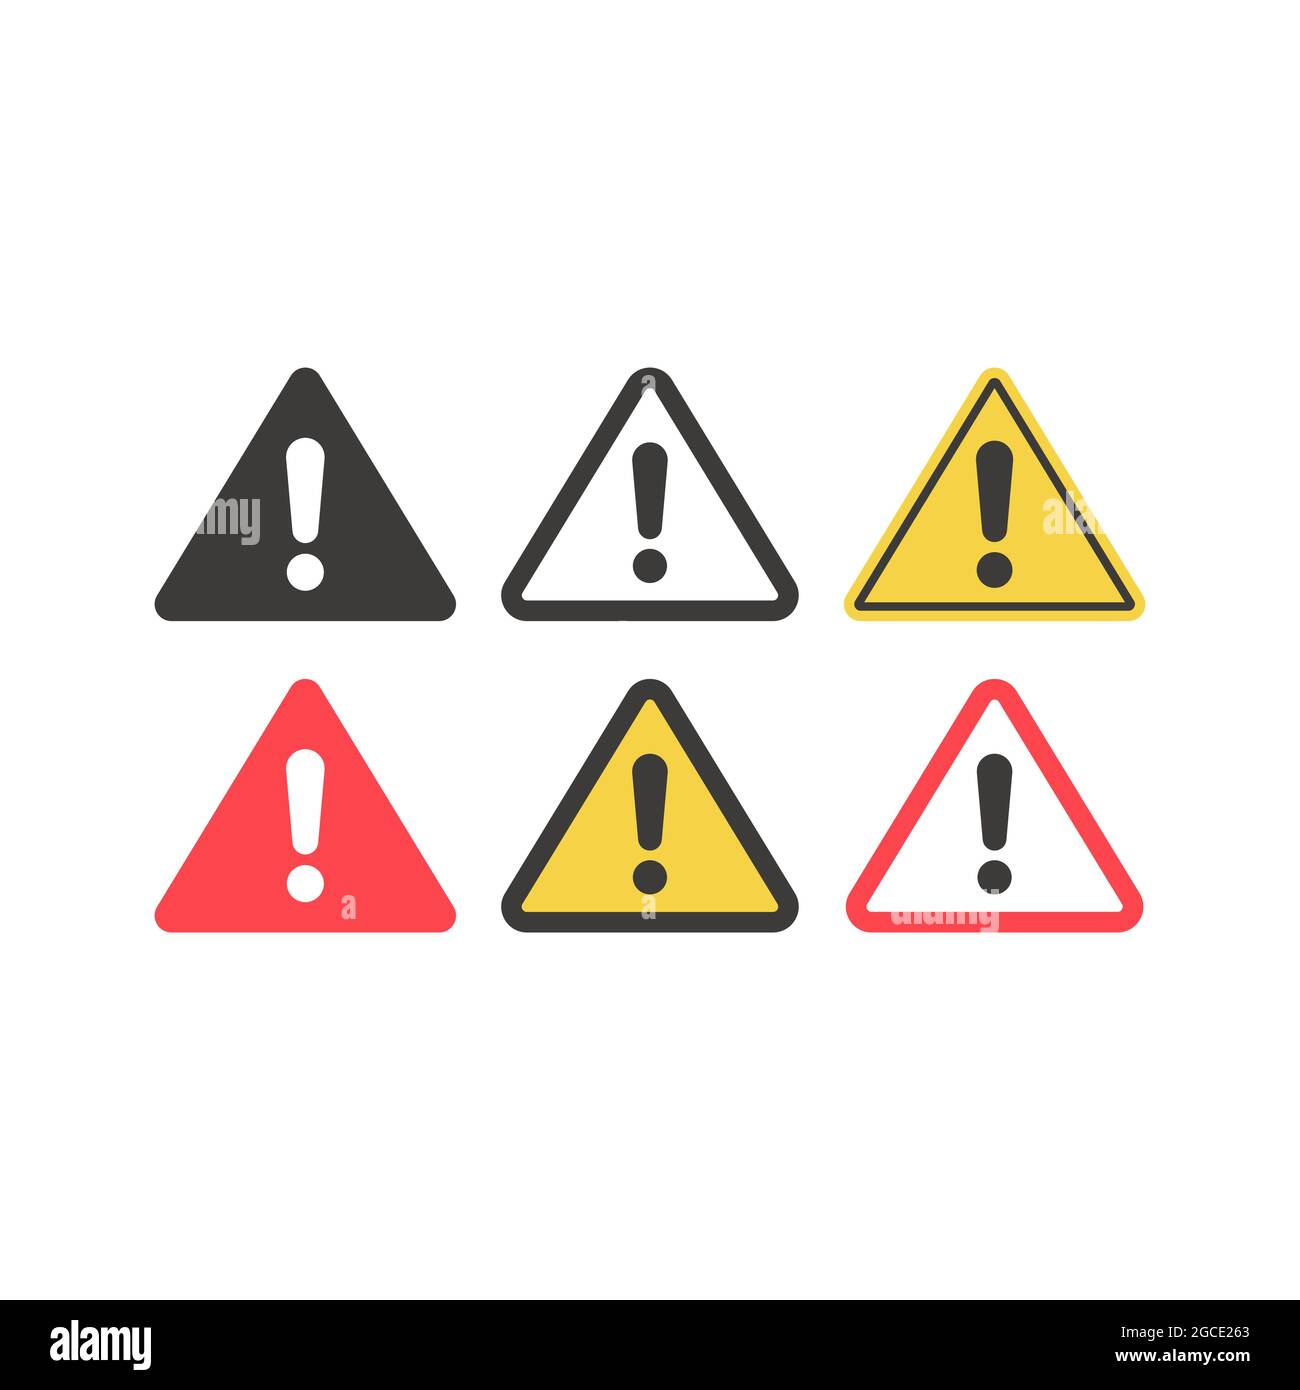 Signe d'avertissement avec point d'exclamation. Icône de vecteur triangulaire définie en jaune, rouge et noir. Illustration de Vecteur